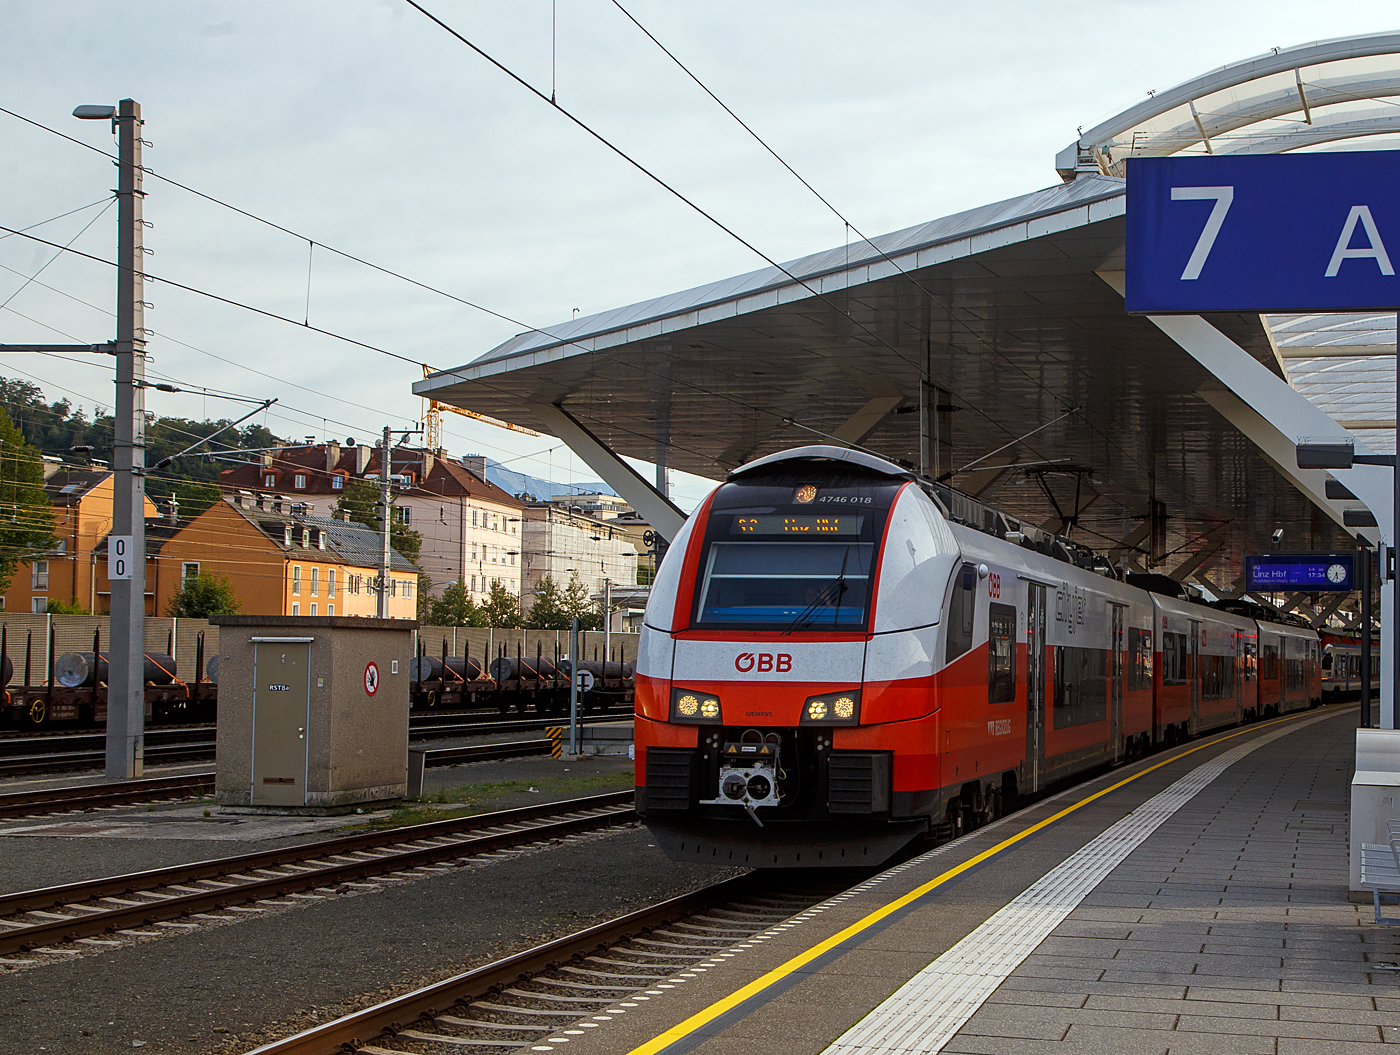 Der BB „Cityjet“ 4746 018 / 4746 518 verlsst am 12.09.2022, als S2 (Freilassing – Salzburg Hbf –Wels Hbf – Linz Hbf) der S-Bahn Salzburg, den Hbf Salzbug.

Einen lieben Gru an den netten Tf zurck.

Die BB Reihe 4746 ist ein dreiteiliger Elektrotriebzug vom Typ Siemens Desiro MainLine (Desiro ML „CityJet“), der sowohl mit dem Stromsystem 15 kV, 16,7 Hz ~ als auch 25 kV, 50 Hz ~  fahren kann. Die Reihe 4746 weist sechs Tren pro Seite, zwei Tren mehr auf als die Reihe 4744. So hat ein ET 4746 maximal 244 Sitzp Lnge ber Kupplung:
	
TECHNISCHE DATEN:
Spurweite:1.435 mm
Achsfolge: Bo‘Bo‘+2‘2‘+Bo‘Bo‘
Lnge (ber Kupplung): 75.152 mm
Drehzapfenabstand: 16.240 mm
Achsabstand im Drehgestell: 2.300 mm
Leergewicht: 145 t
Antriebsleistung: 2.600 kW 
Hchstgeschwindigkeit: 160 km/h 
Anfahrbeschleunigung1,1 m/s 
Stromsystem: 15 kV 16,7 Hz AC  und 25 kV, 50 Hz AC
Fubodenhhe: 600 mm
Fahrgastkapazitt: 244 Sitzpltze 
Max. Achslast: kleiner 17 t
